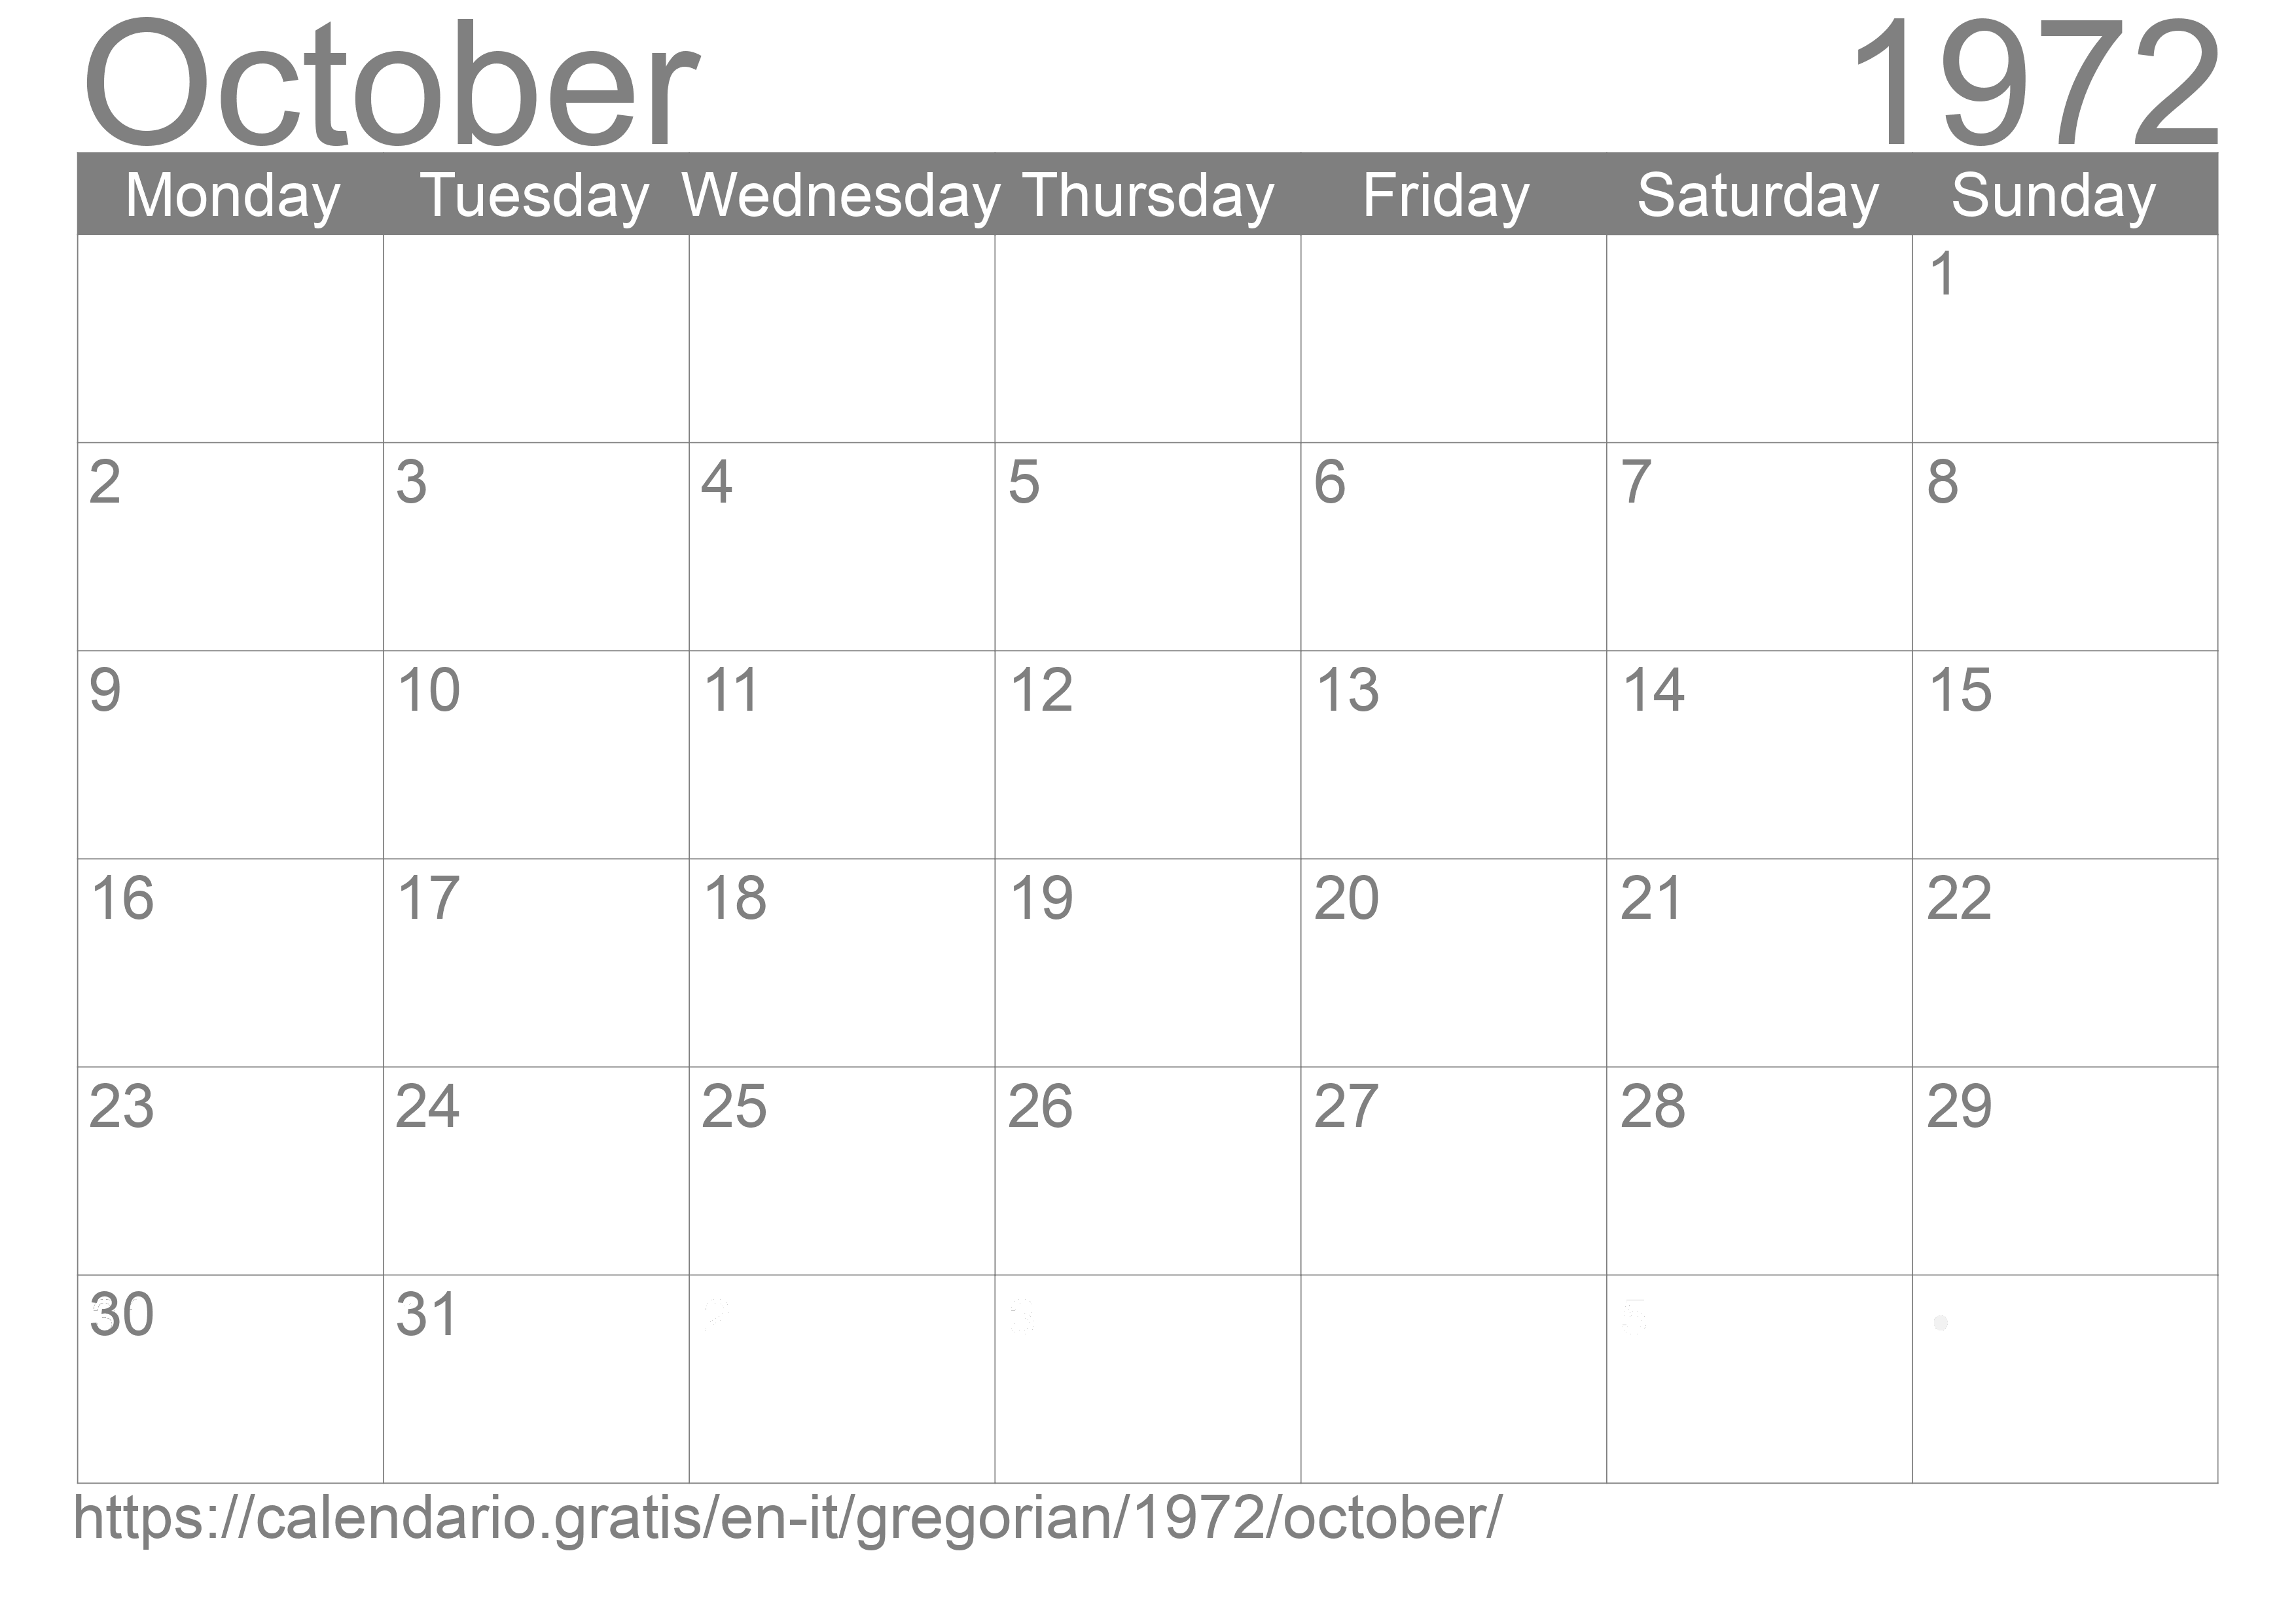 Calendar October 1972 to print